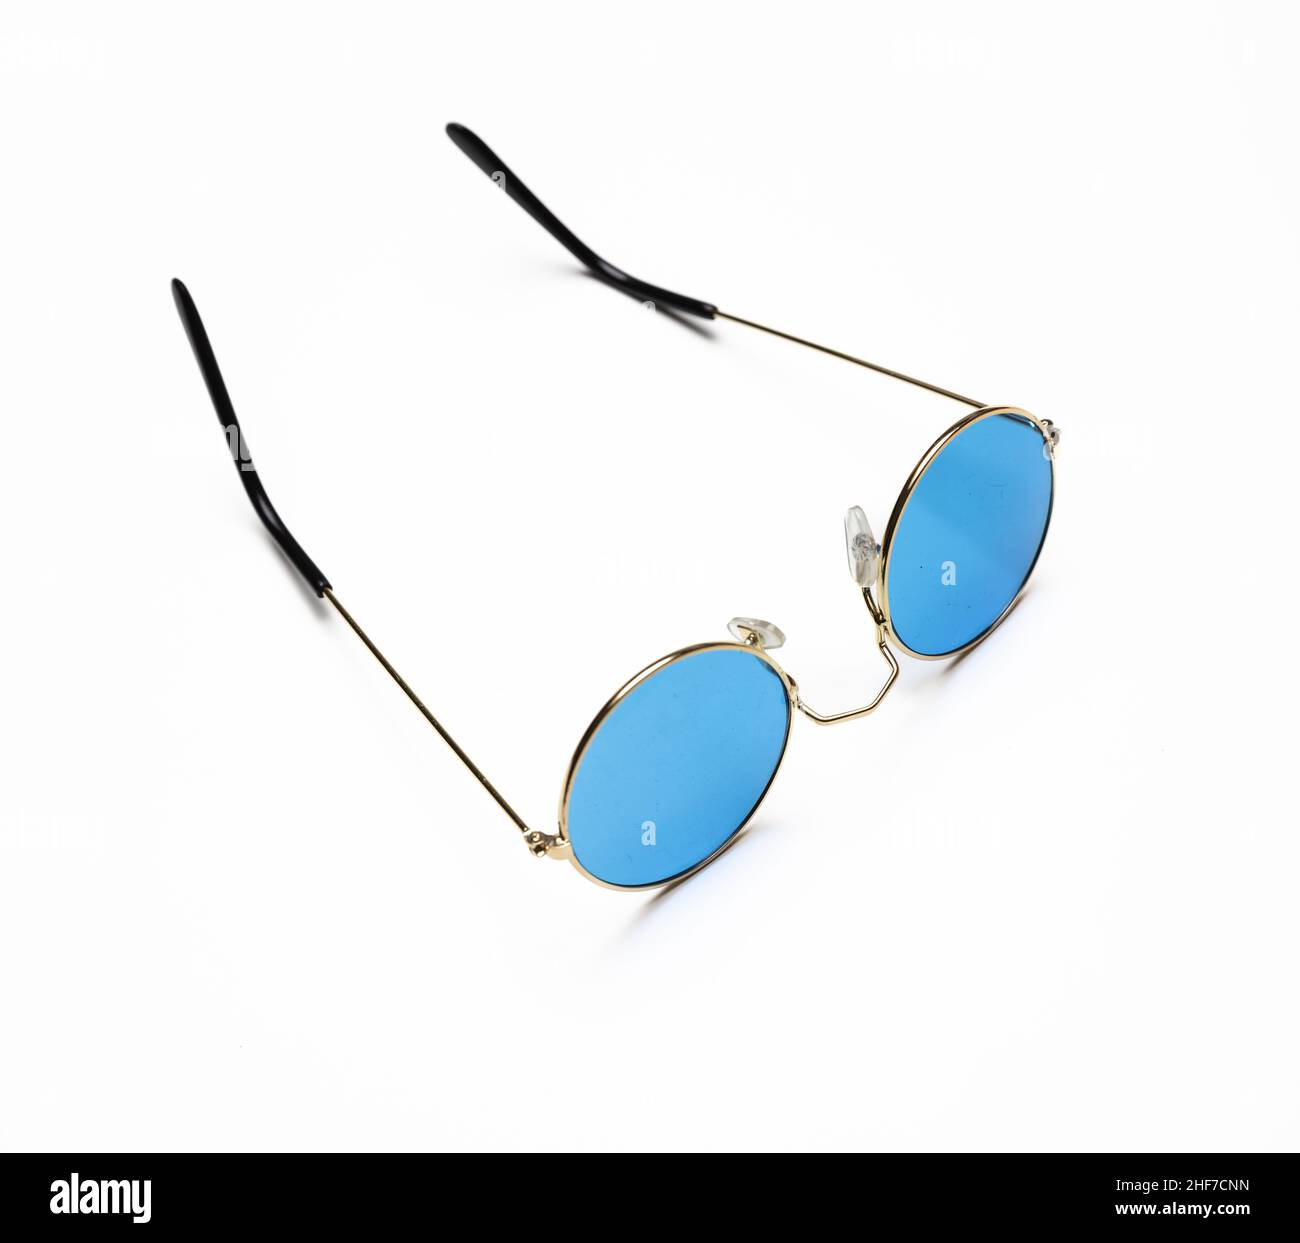 Eyeware, Sonnenbrille mit blauer Farblinse und goldenem runden Metallrahmen isoliert auf weißem Hintergrund, ausgeschnitten, Design-Element Stockfoto